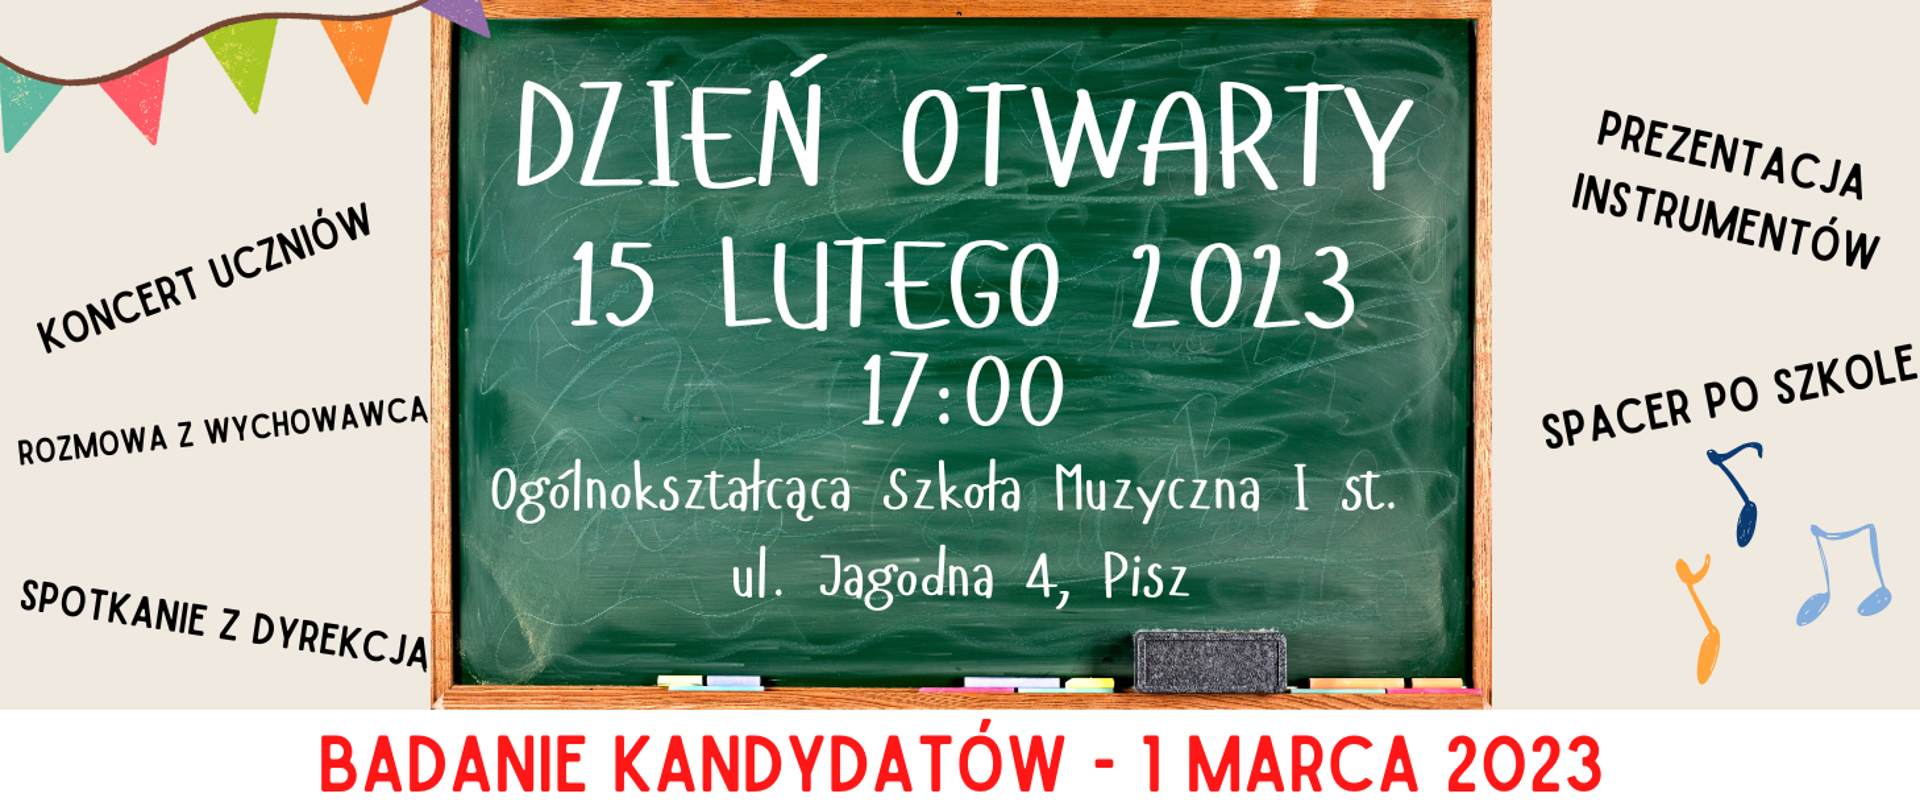 Plakat, na środku tablica szkolna z informacją o Dniu otwartym, który ma miejsce 15 lutego 2023r. o godz. 17.00